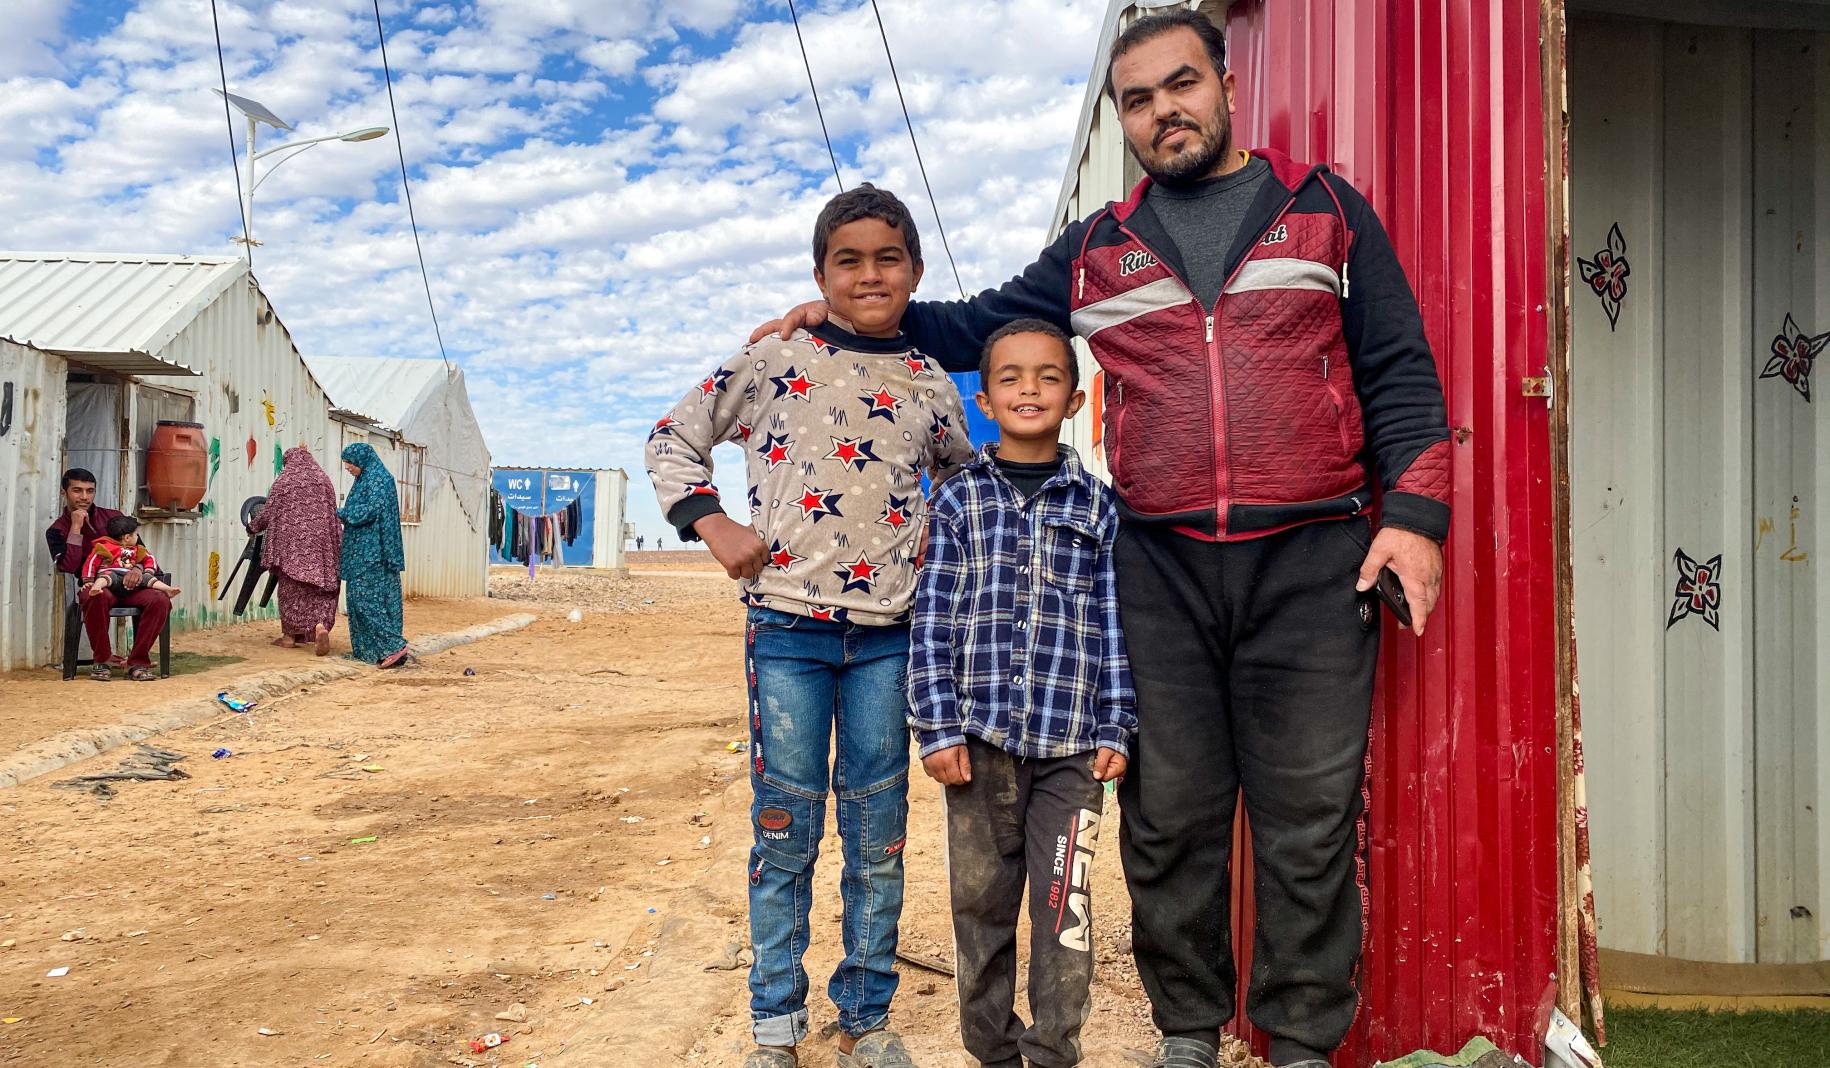 Ahmad coloca con orgullo sus brazos alrededor de sus dos hijos pequeños mientras están fuera de su casa y posan para la cámara.